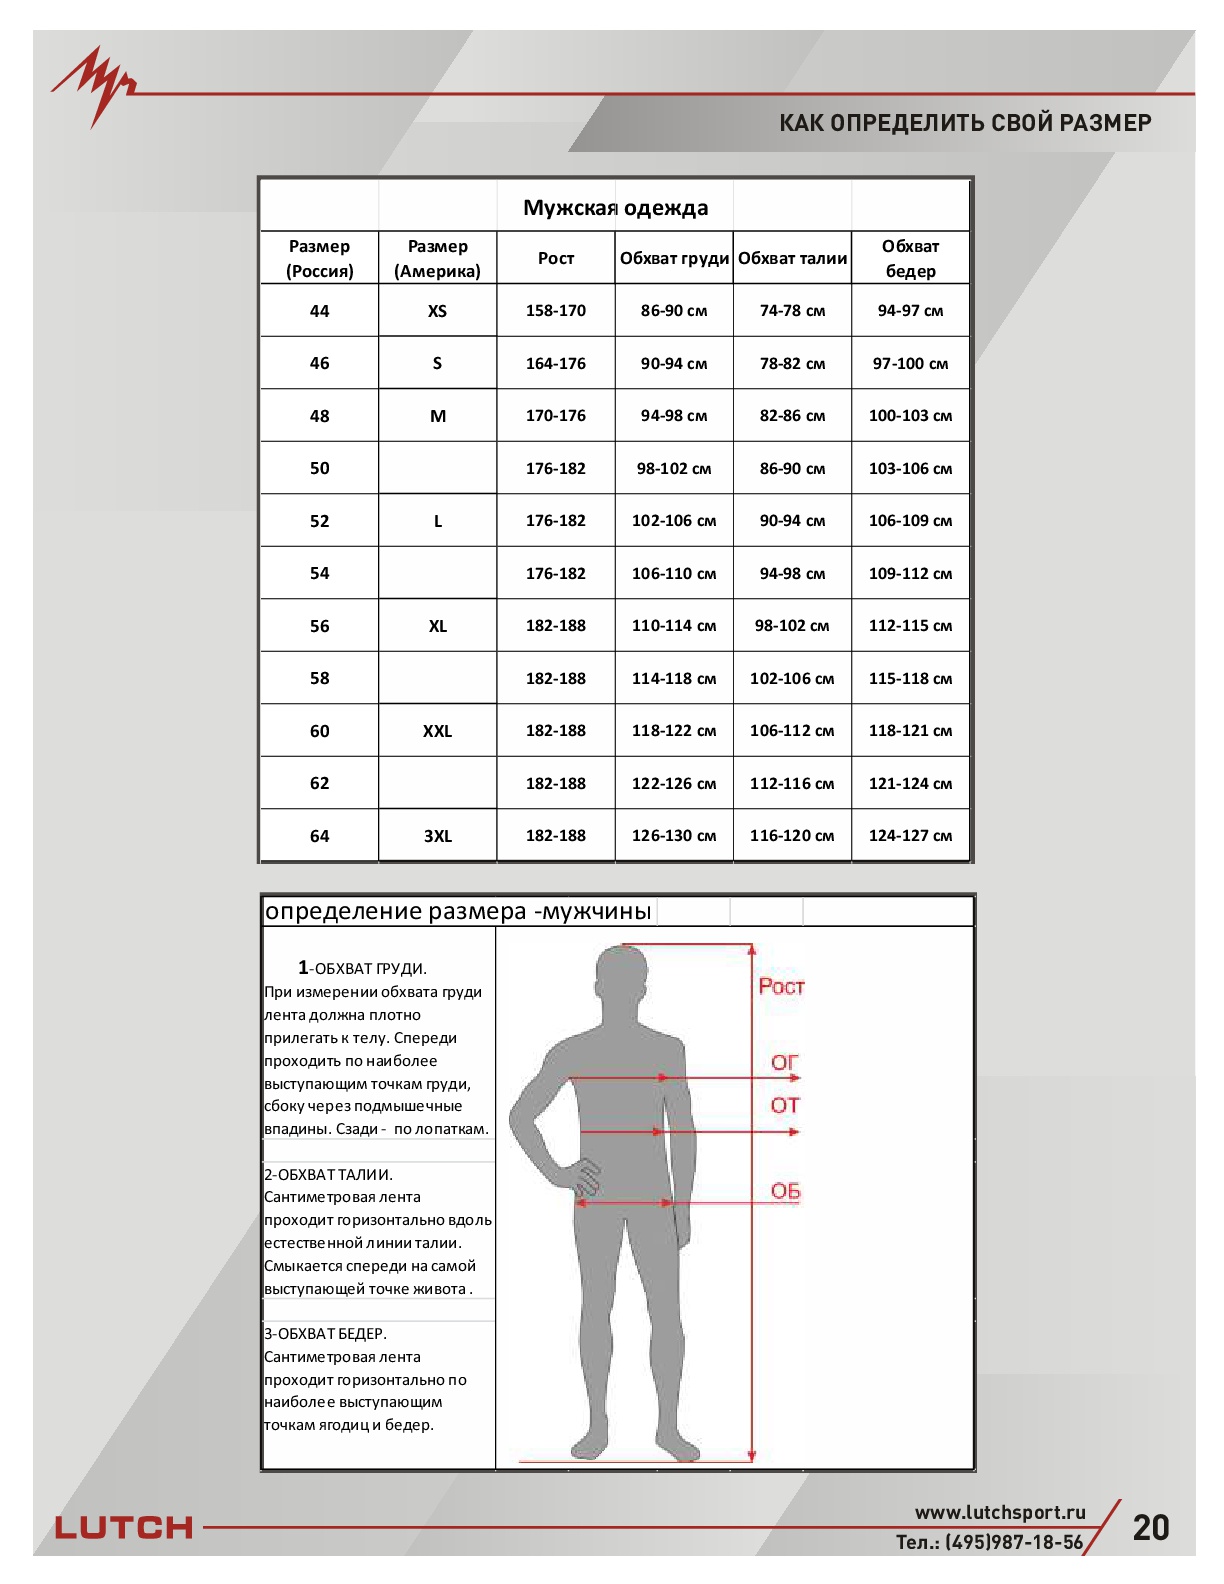 L рост мужской. Обхват груди 120 см мужской размер. Таблица размеров мужской одежды. Таблица размеров одежды для мужчин. Мужские параметры одежды.